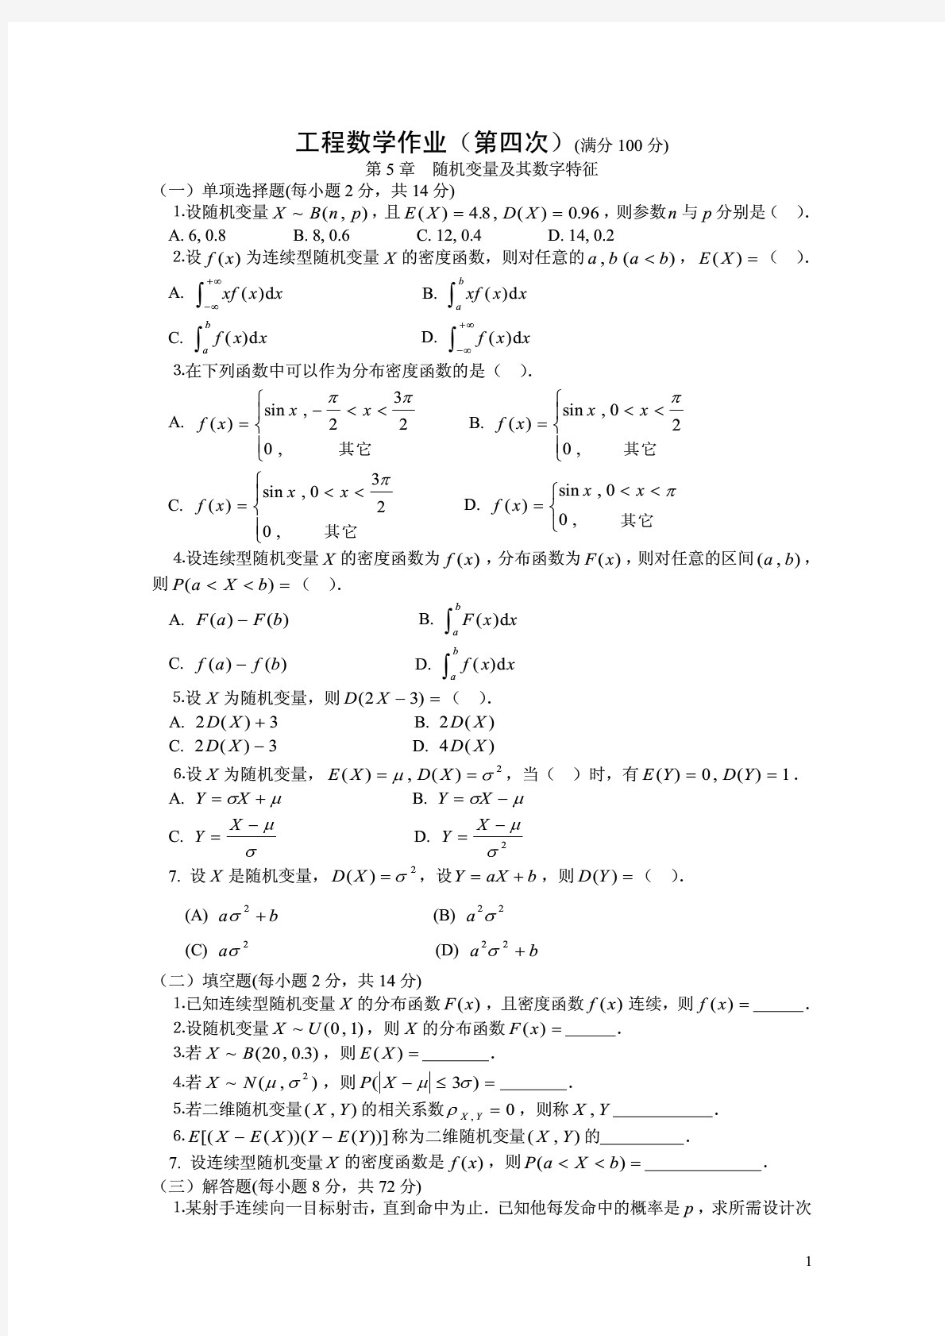 三月三工程数学作业(第四次)(满分100分)